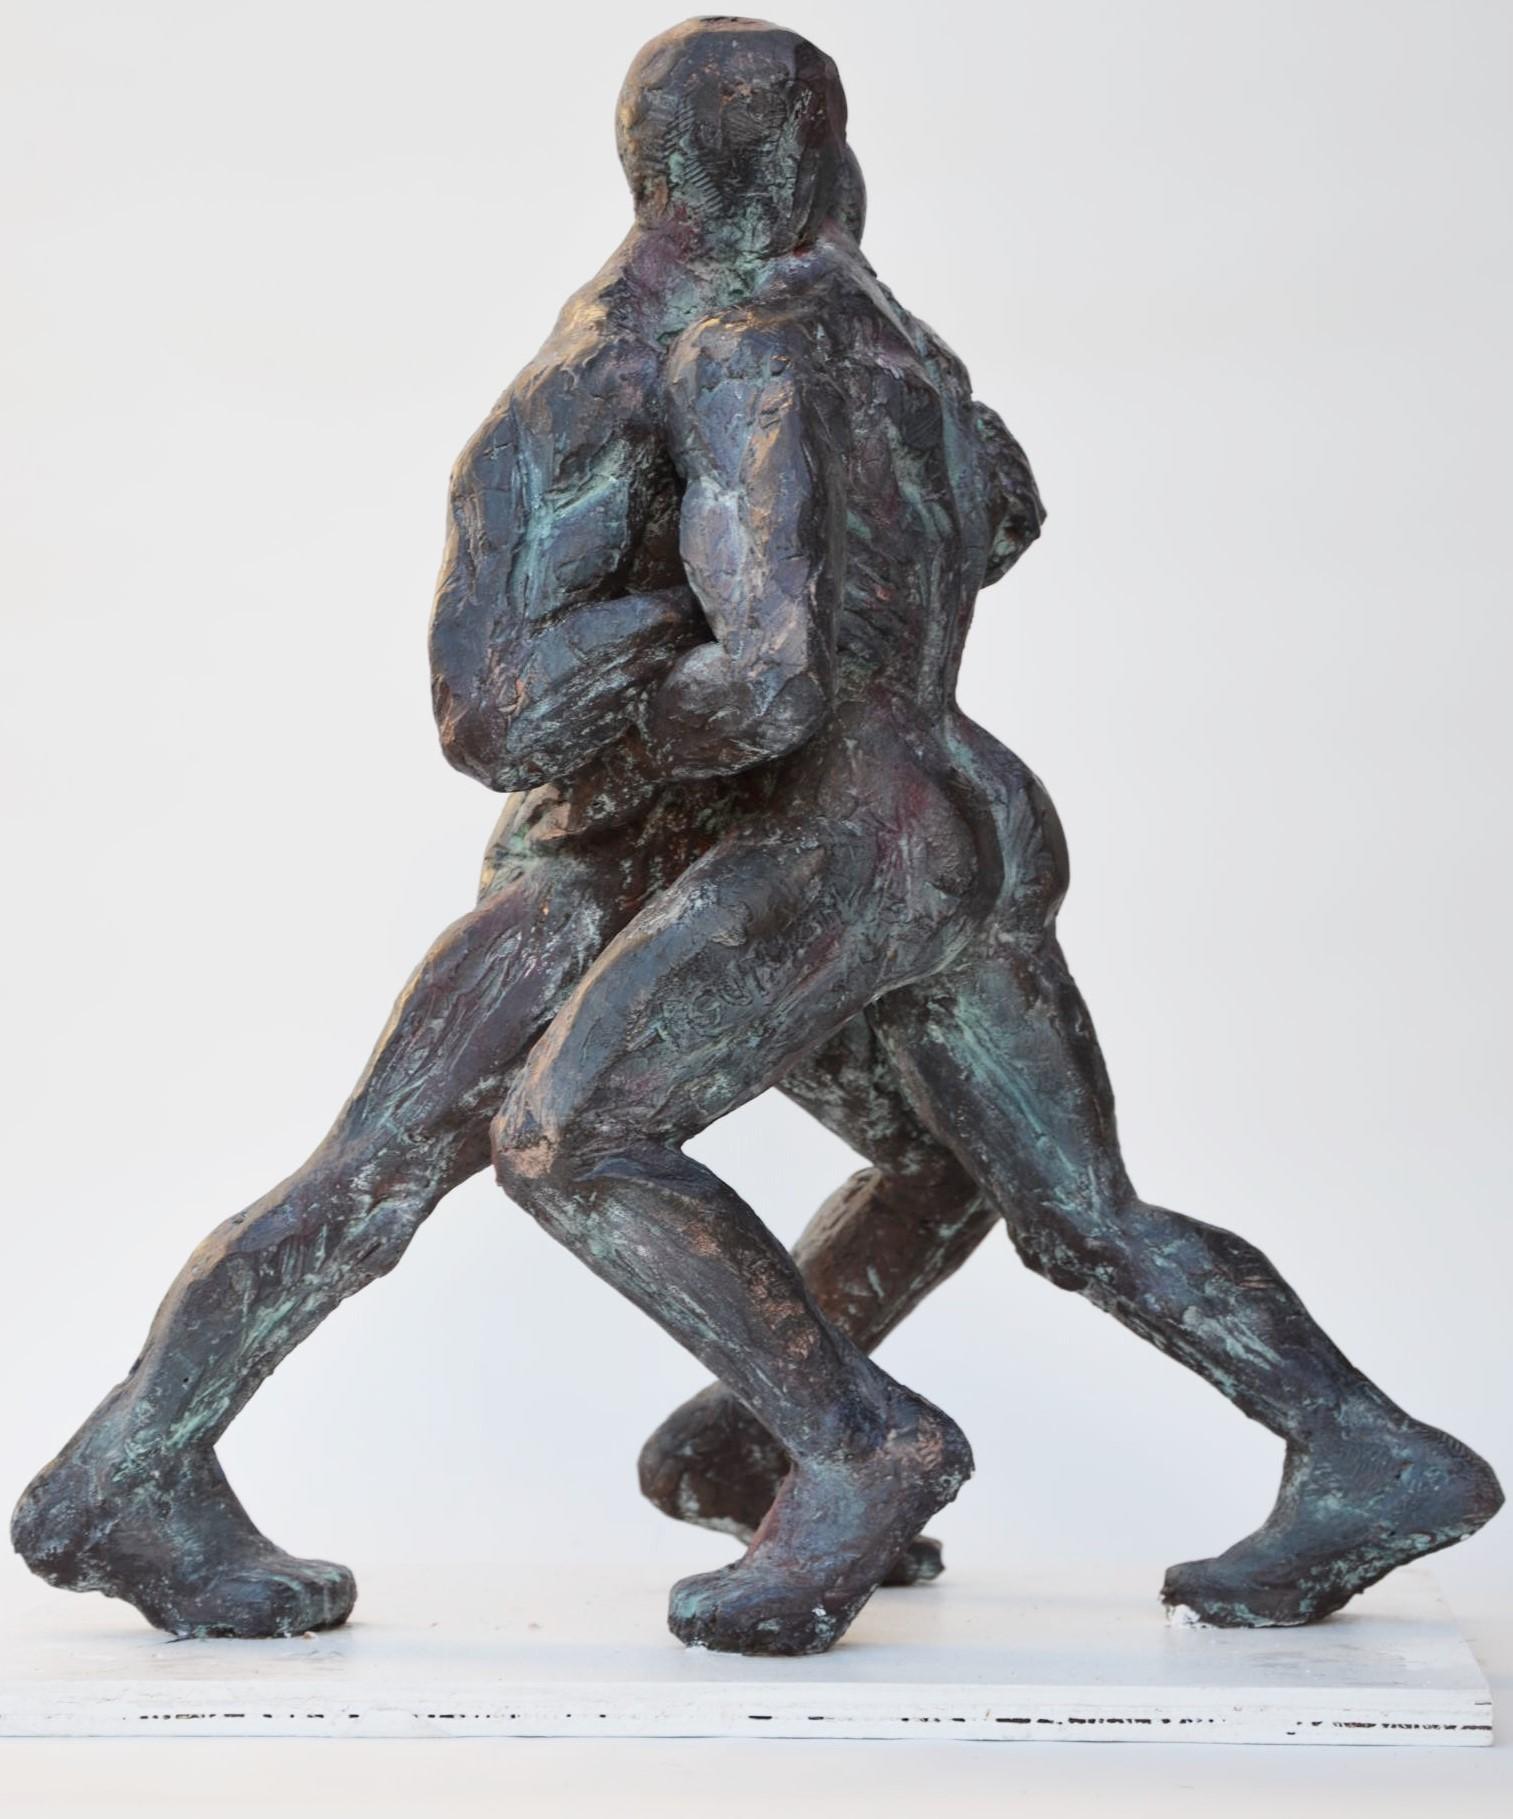 Ringer VIII, ist eine Bronzeskulptur des französischen zeitgenössischen Künstlers Yann Guillon. Es zeigt zwei Männer bei einem Ringkampf. 55 cm × 40 cm × 25 cm.
Yann Guillon konzentriert sich in seinem Werk auf den menschlichen Körper, wobei er